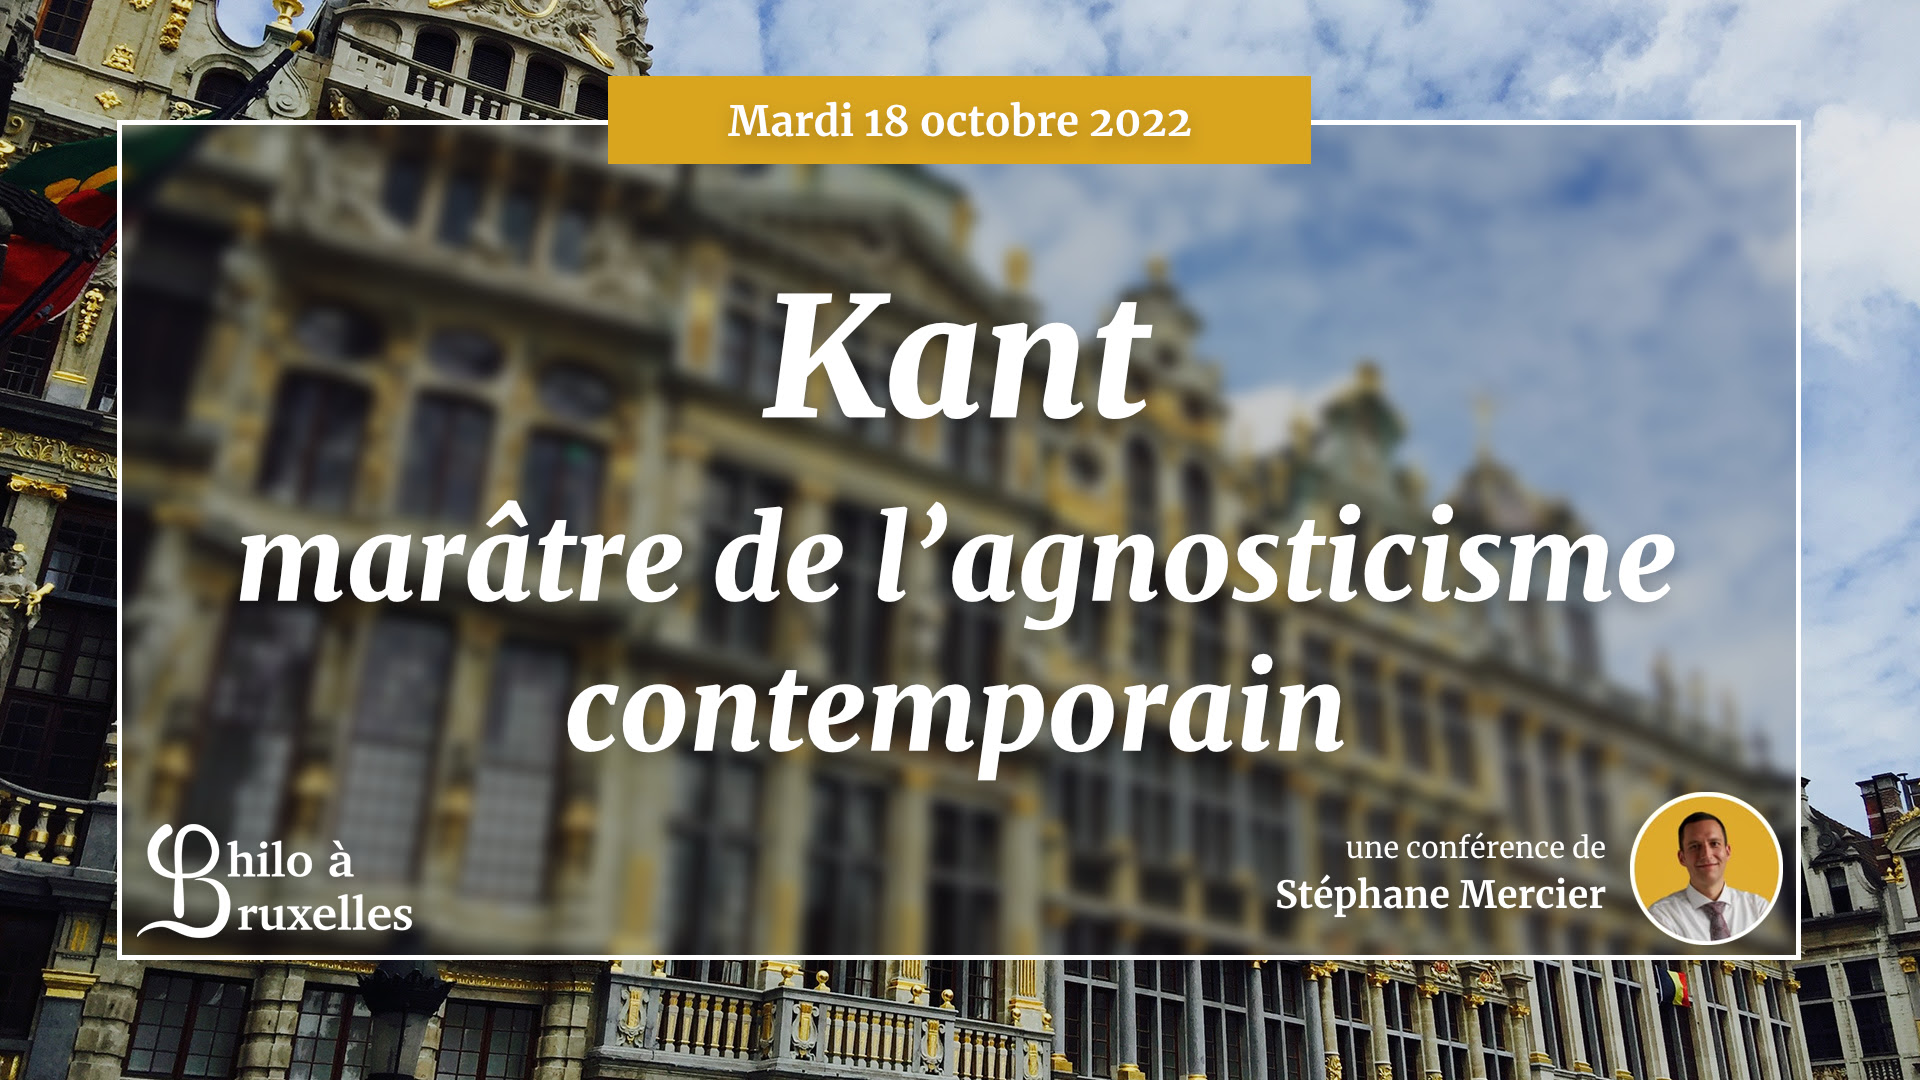 Kant, marâtre de l’agnosticisme contemporain